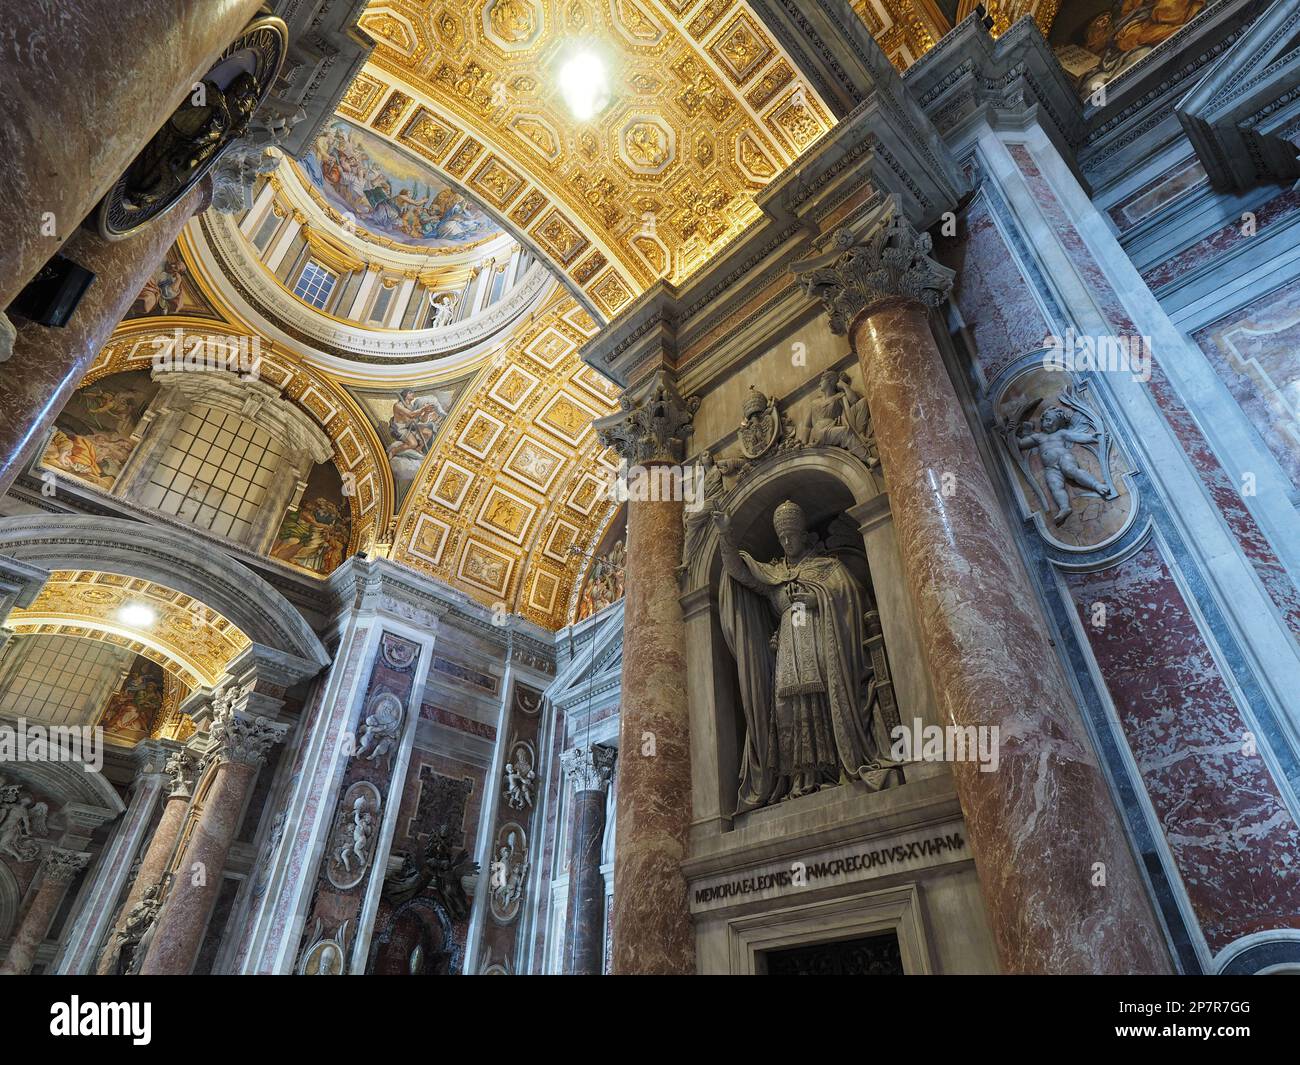 La decorazione interna della Basilica di San Pietro, insieme alle sue dimensioni, è un'attenzione. Città del Vaticano, Europa Foto Stock